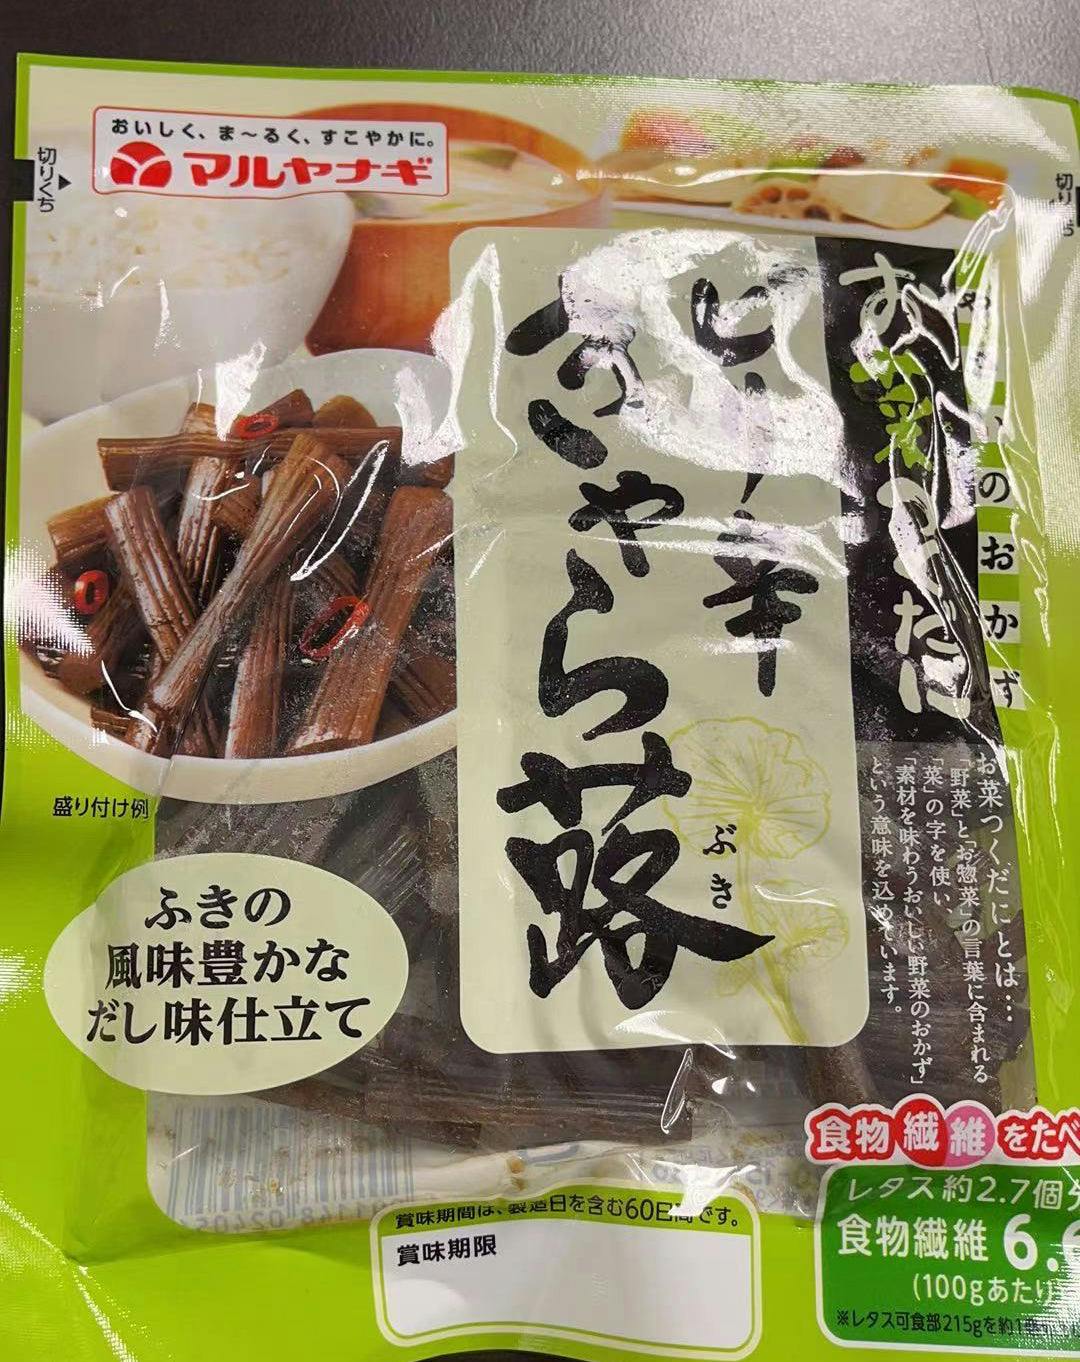 日本进口 酱油蜂斗菜 日本原产特色蔬菜 具有止咳润肺神效